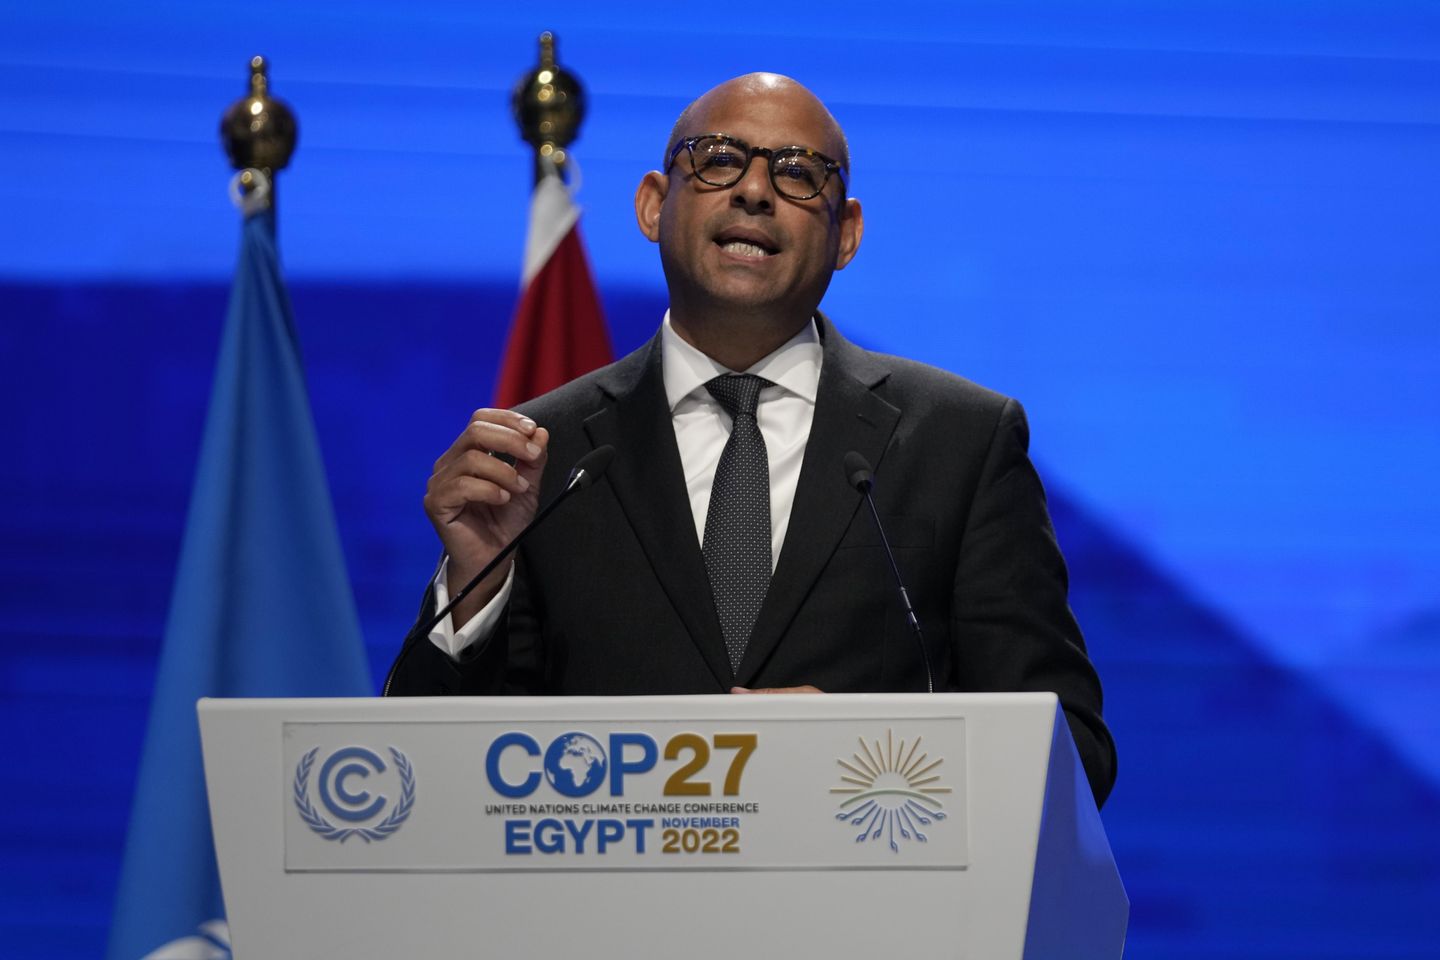 BM iklim patronu emisyonlarda kesinti olmamasını kabul etti